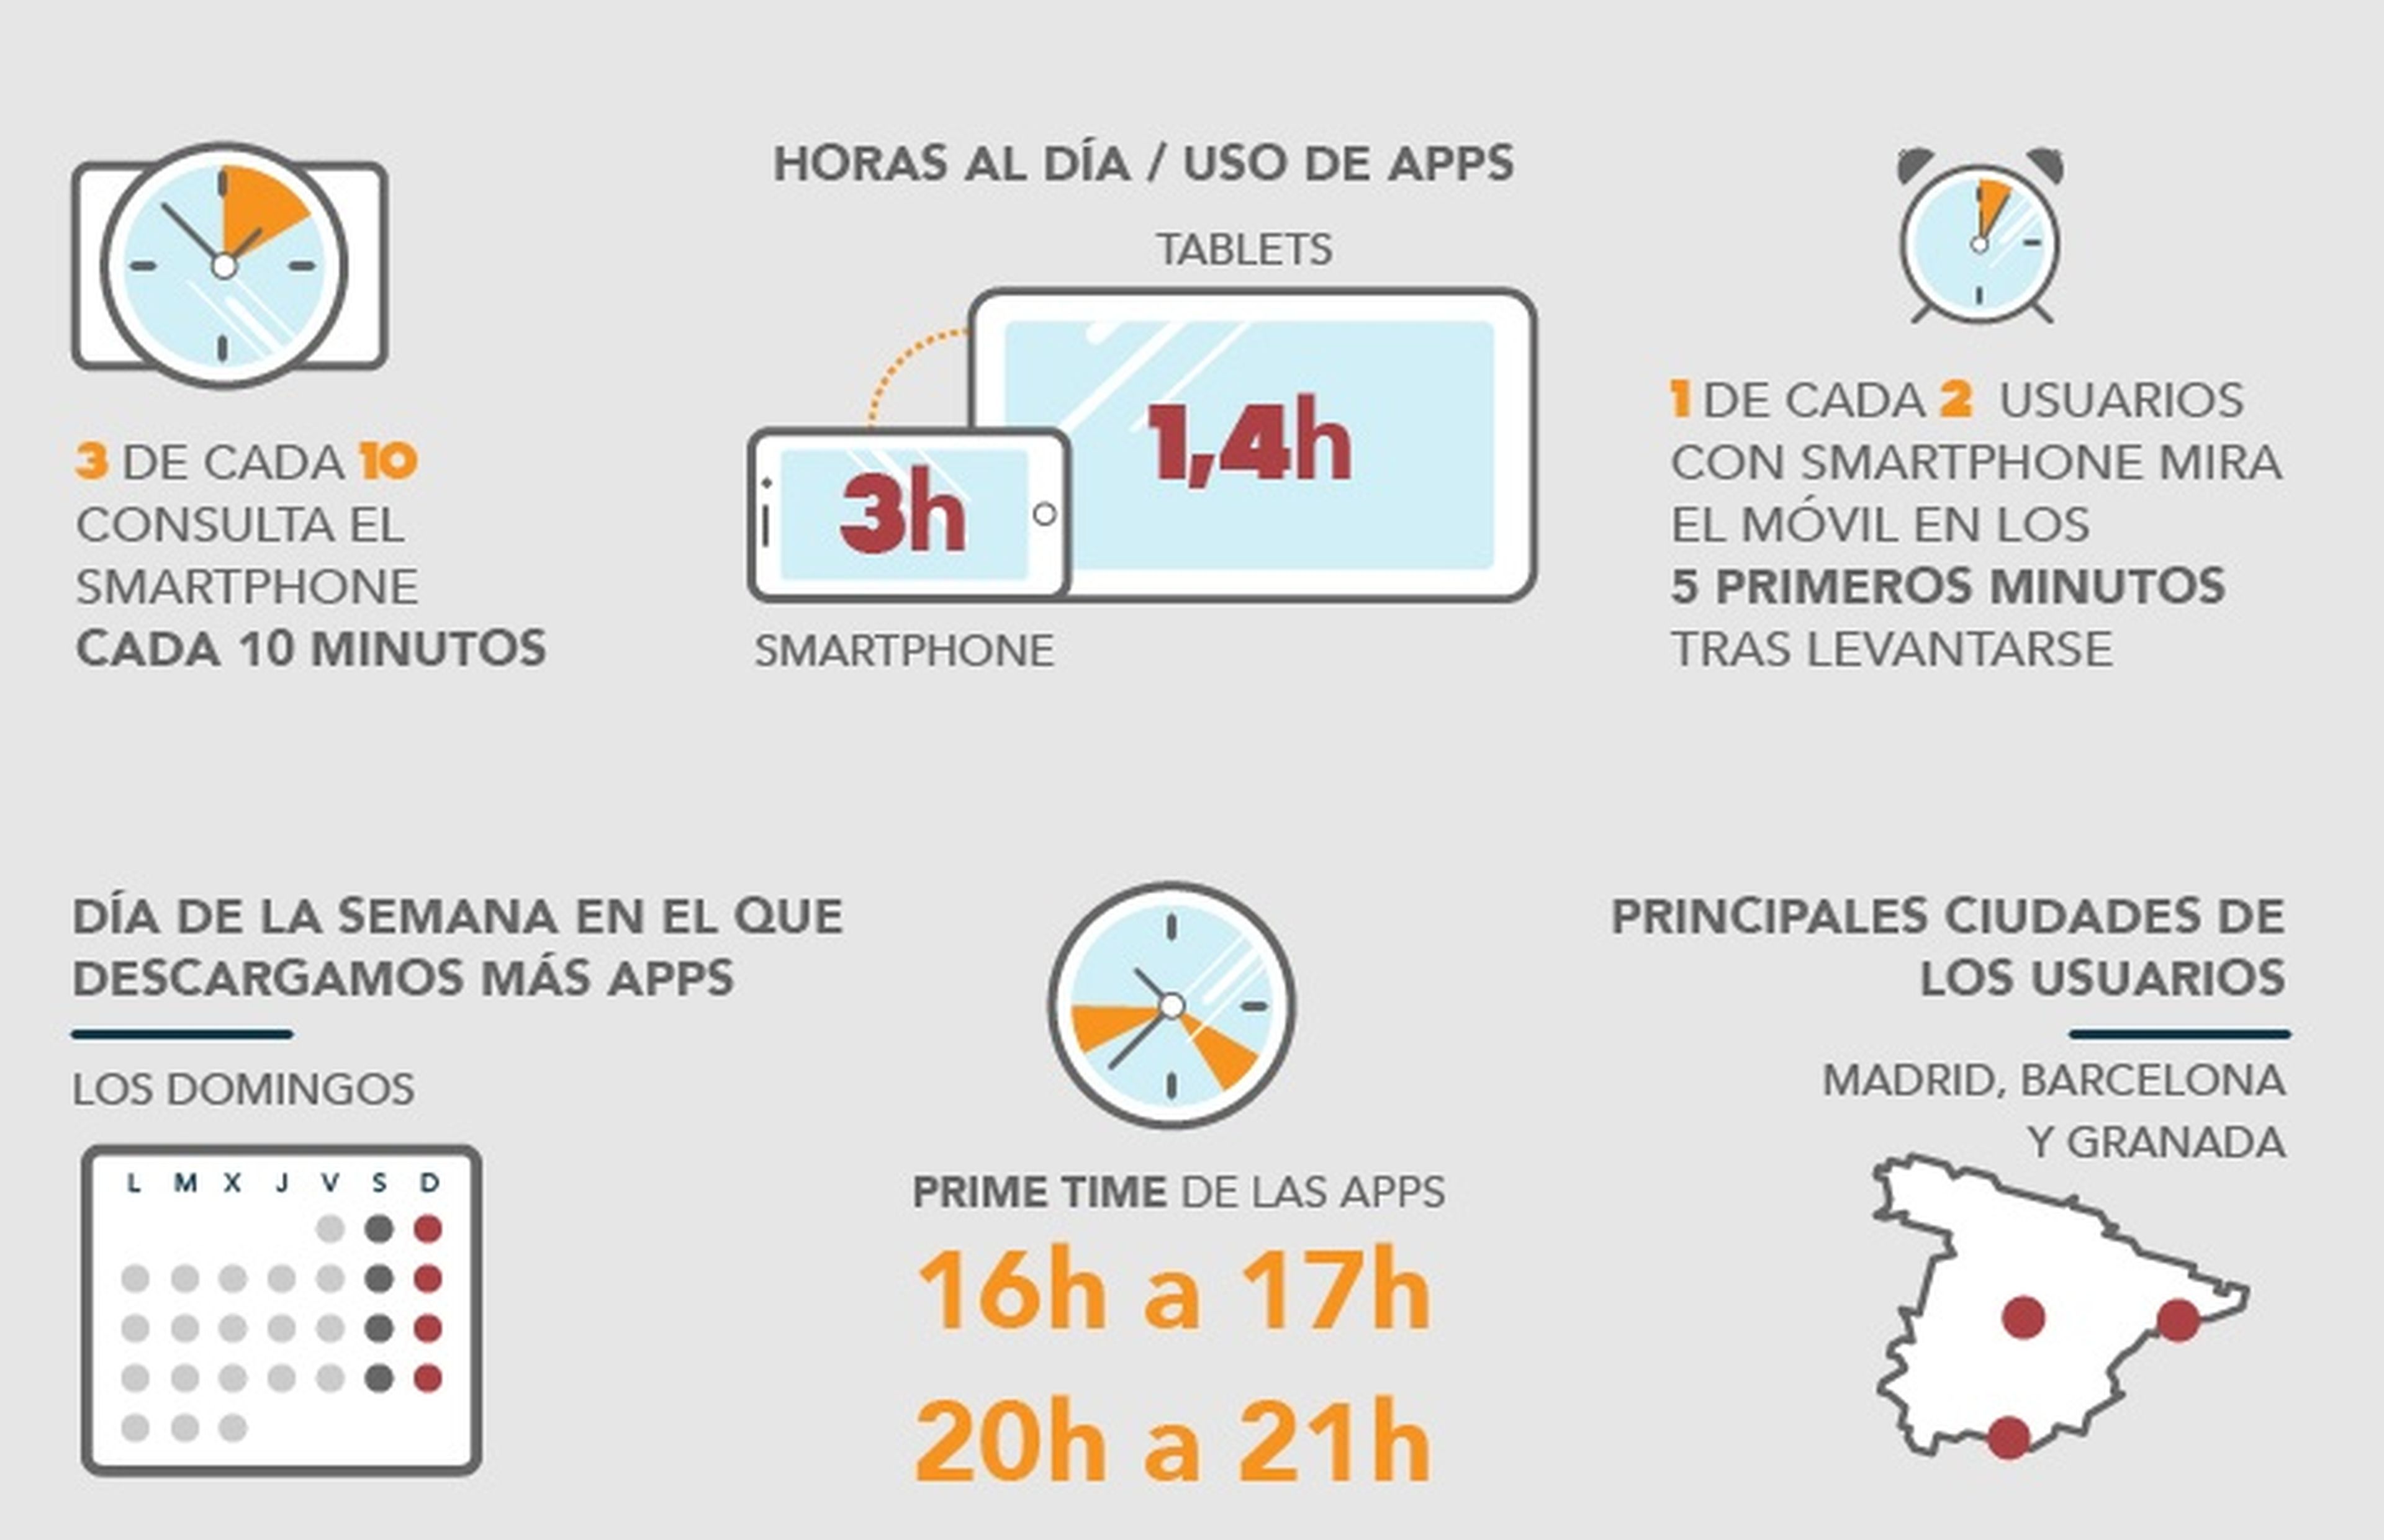 España es el quinto país que más compra a través de apps